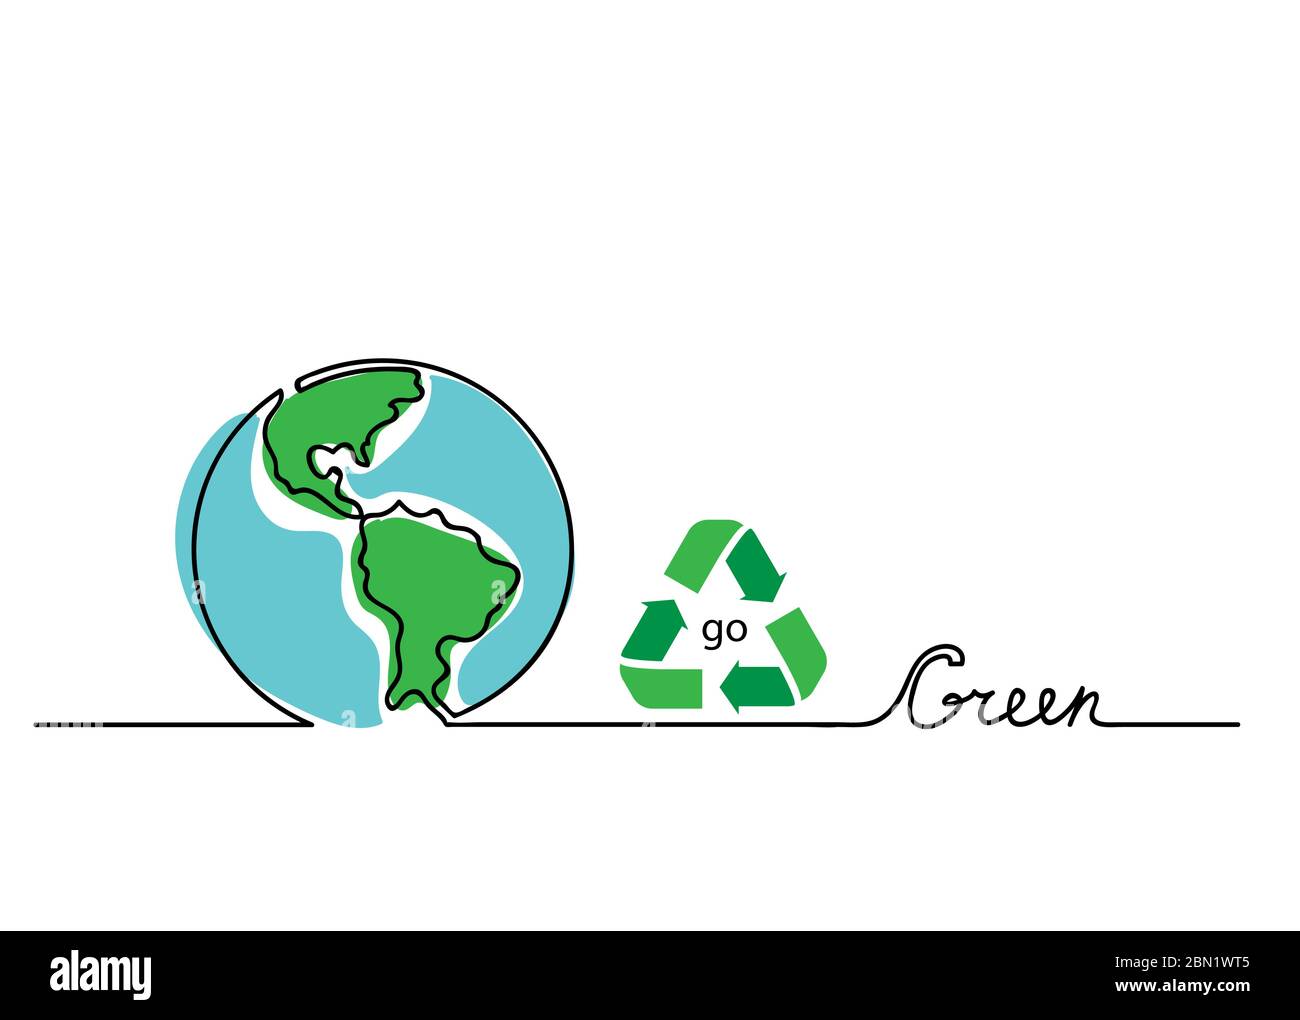 Go Green Vektor Konzept. Schriftzug mit Erde und Recycling-Schild. Eine, kontinuierliche Linie Zeichnung gehen grünen Hintergrund, Banner, Illustration Stock Vektor